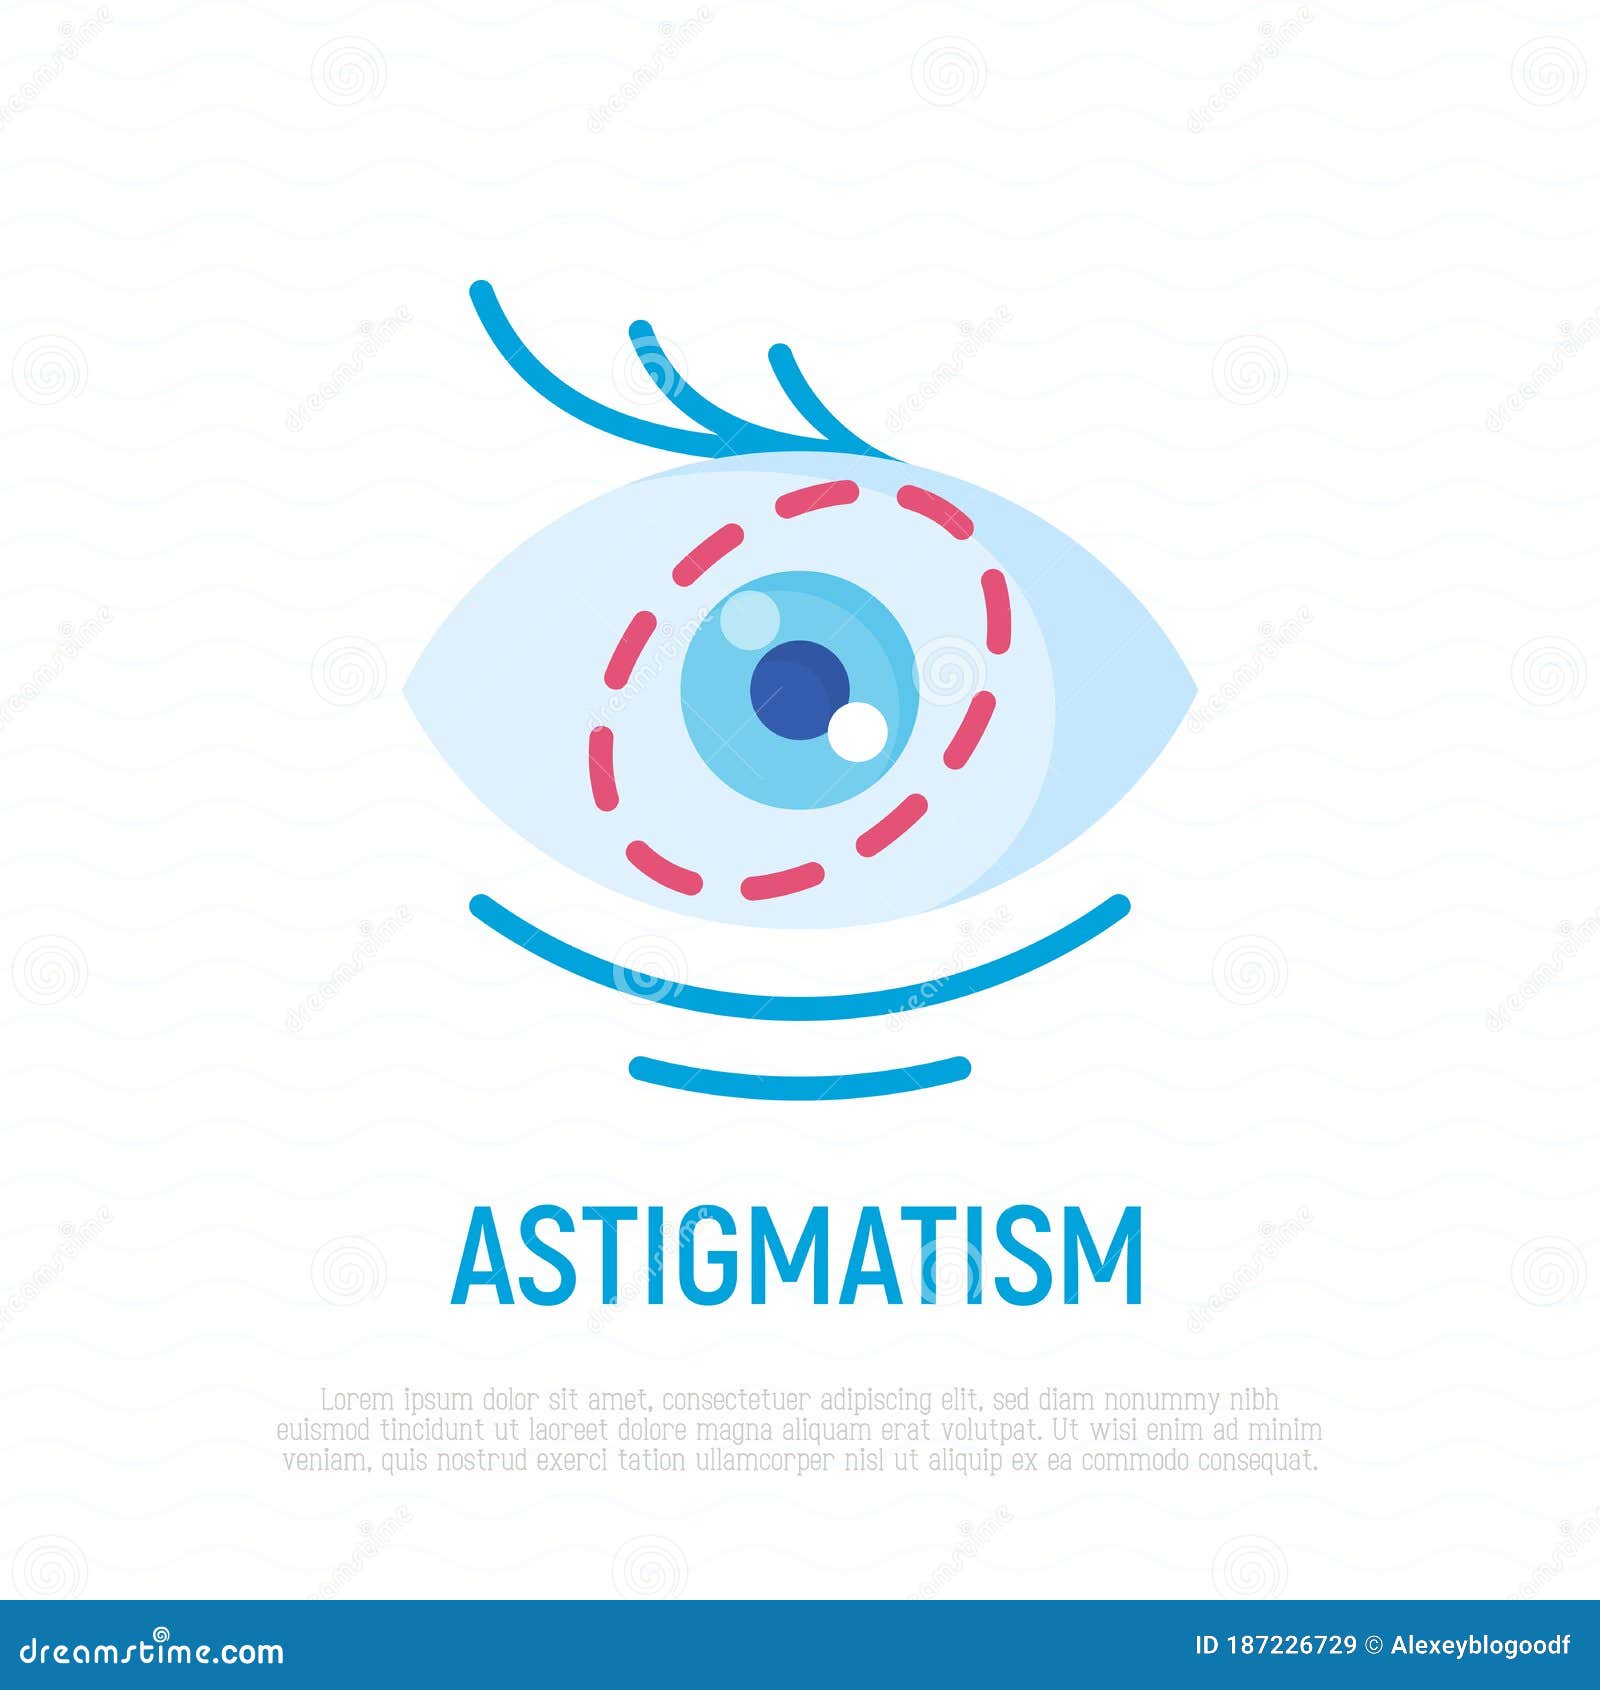 Astigmatism: ce trebuie să știi despre această afecțiune?